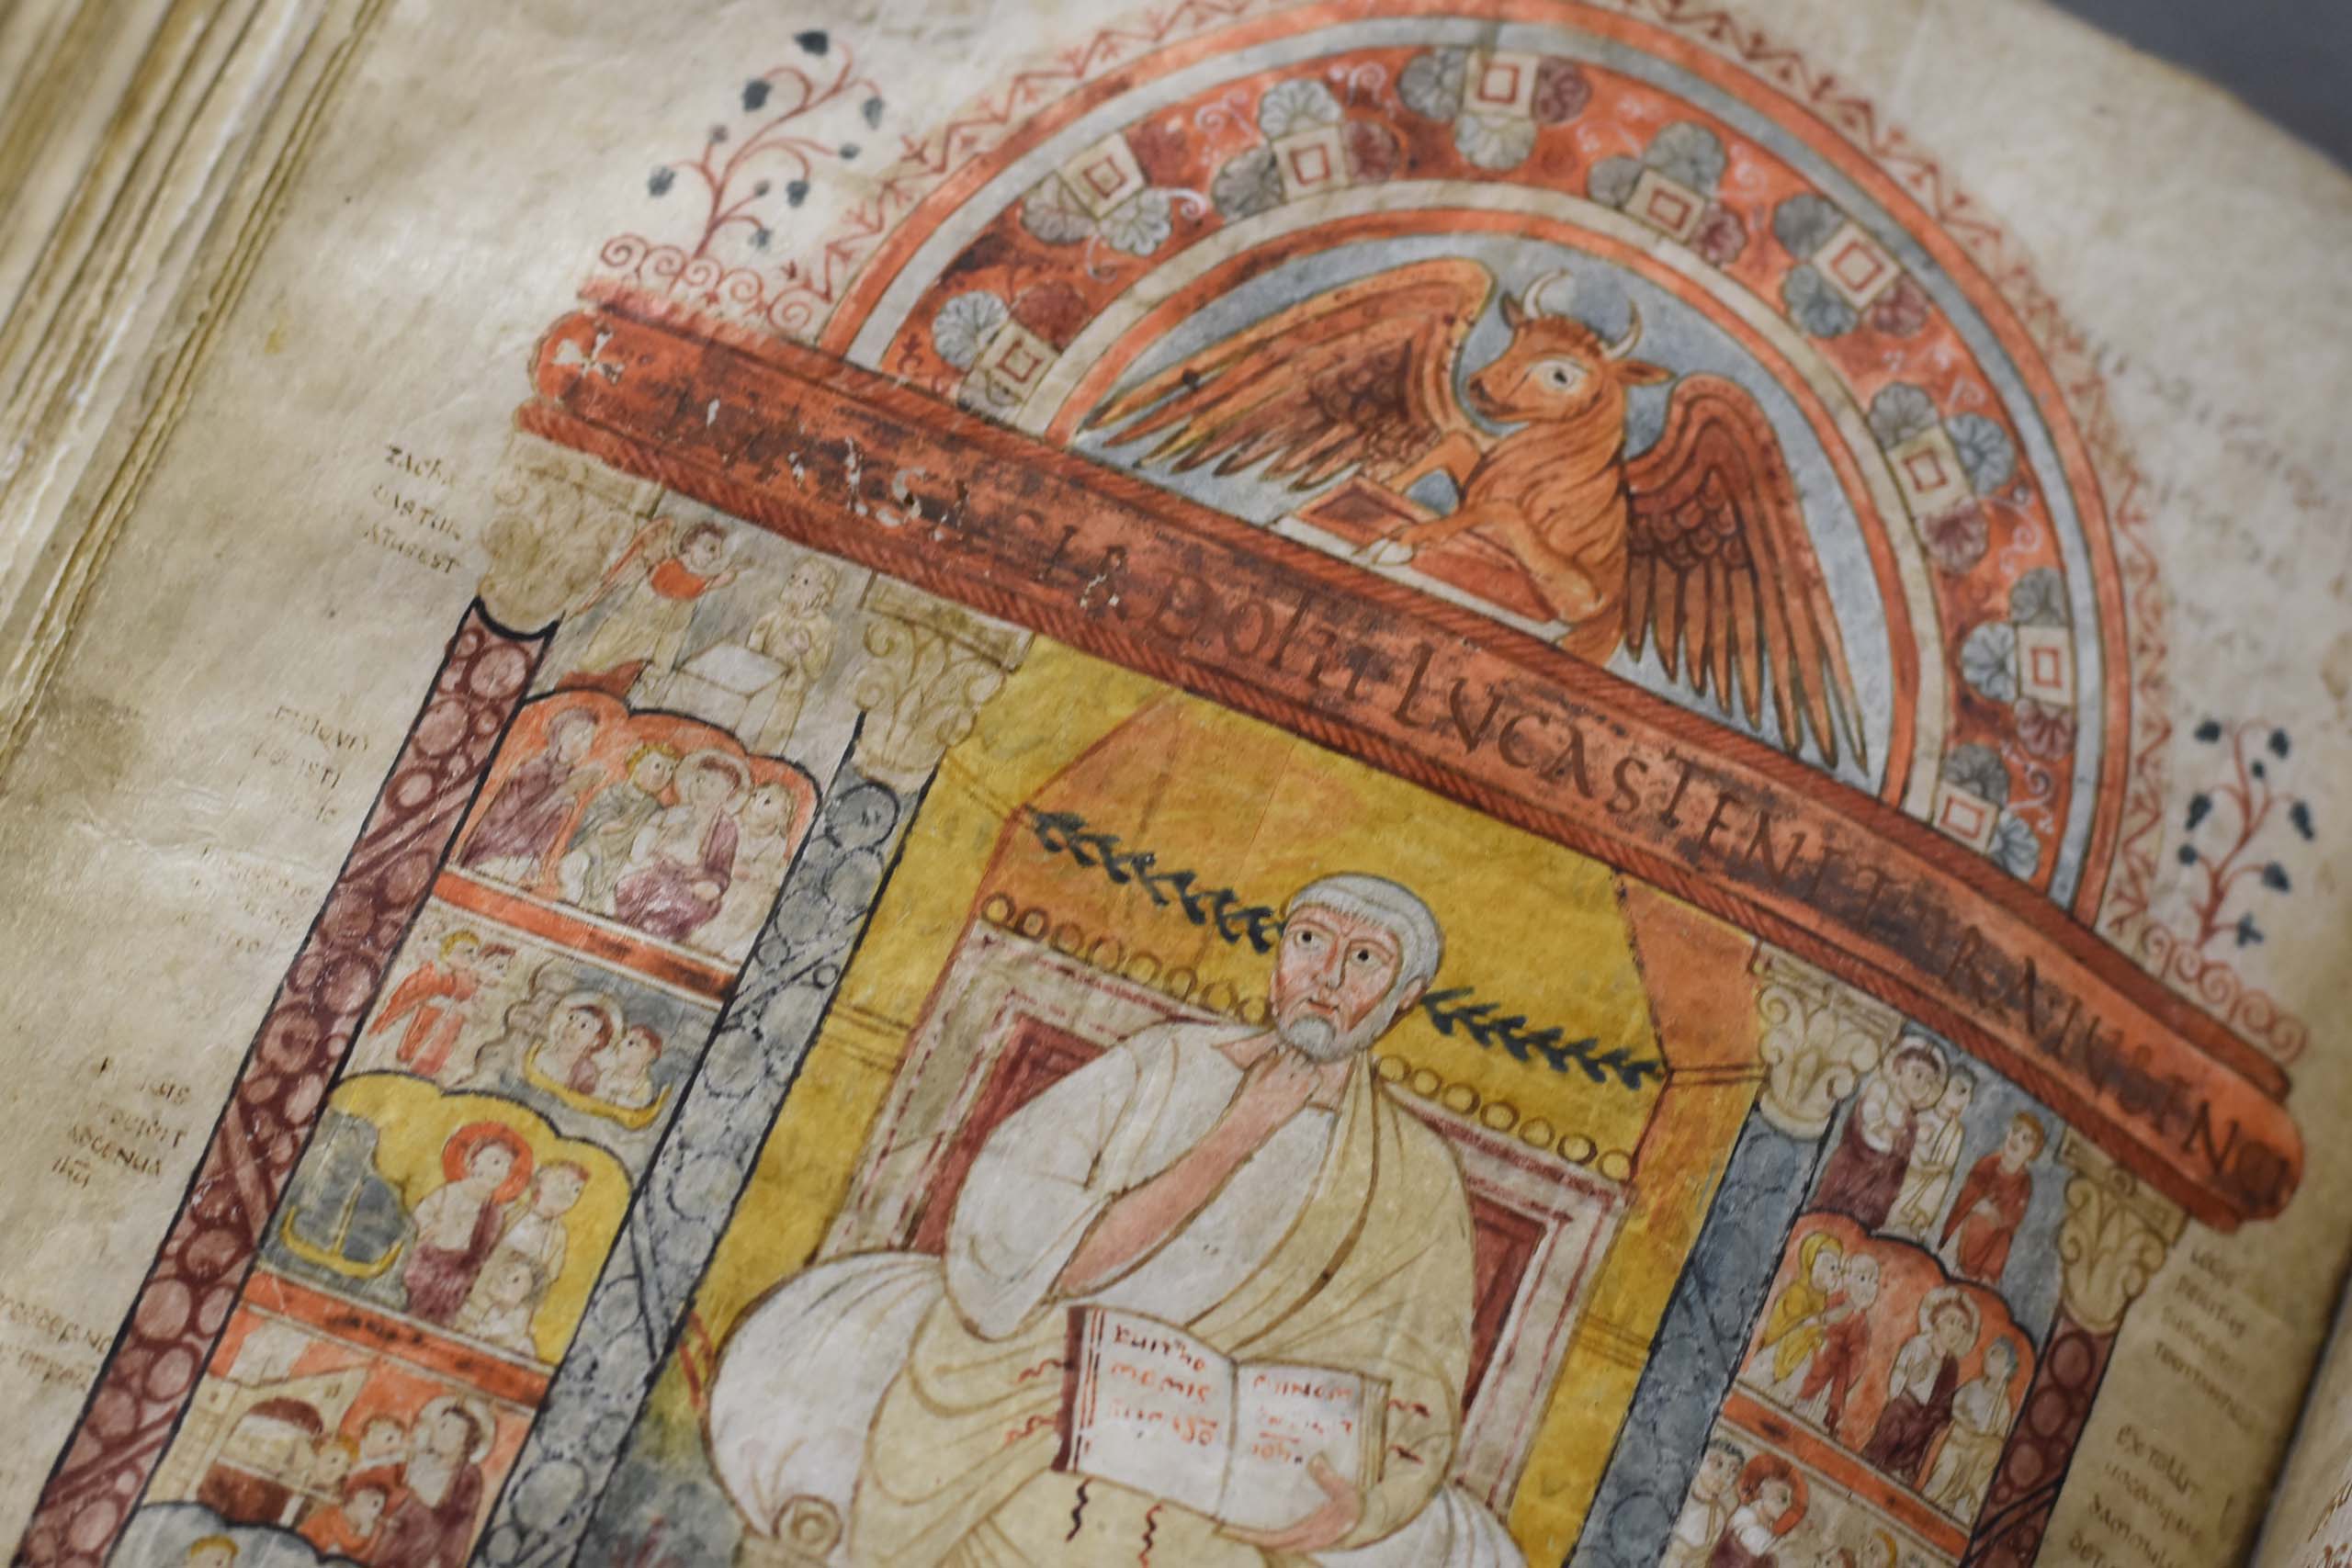 Illustration at the beginning of the Gospels of Luke